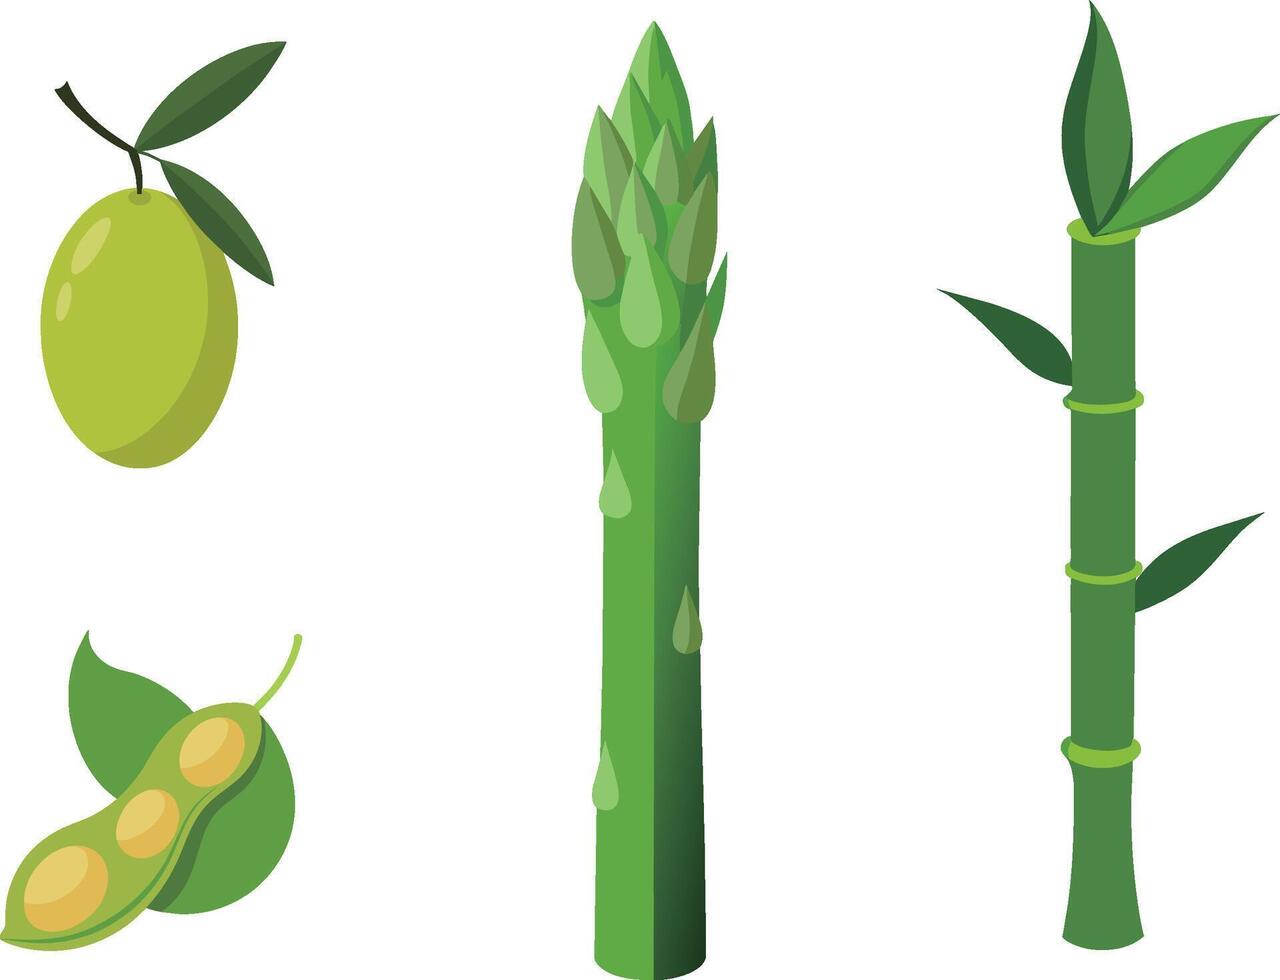 groen asperges, olijven en bonen vector